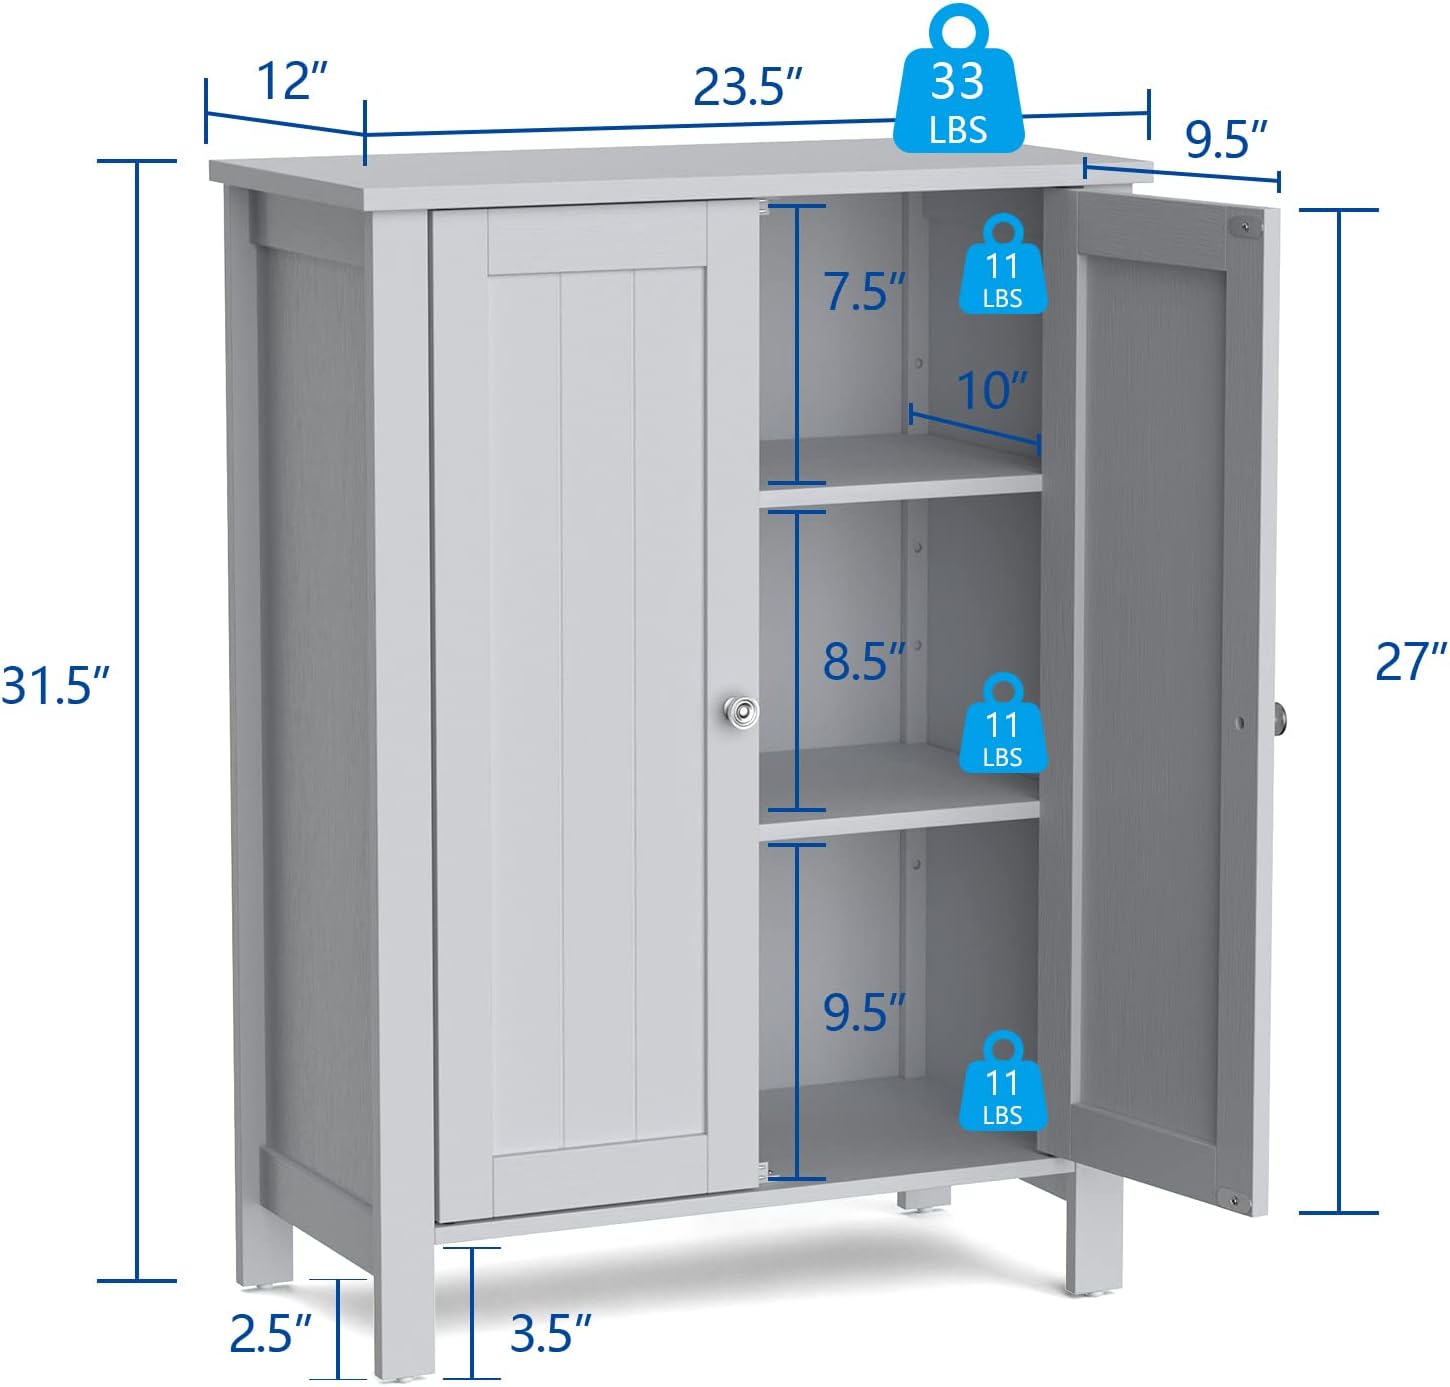 Armario de suelo de baño, armario de almacenamiento de 3 niveles con puerta